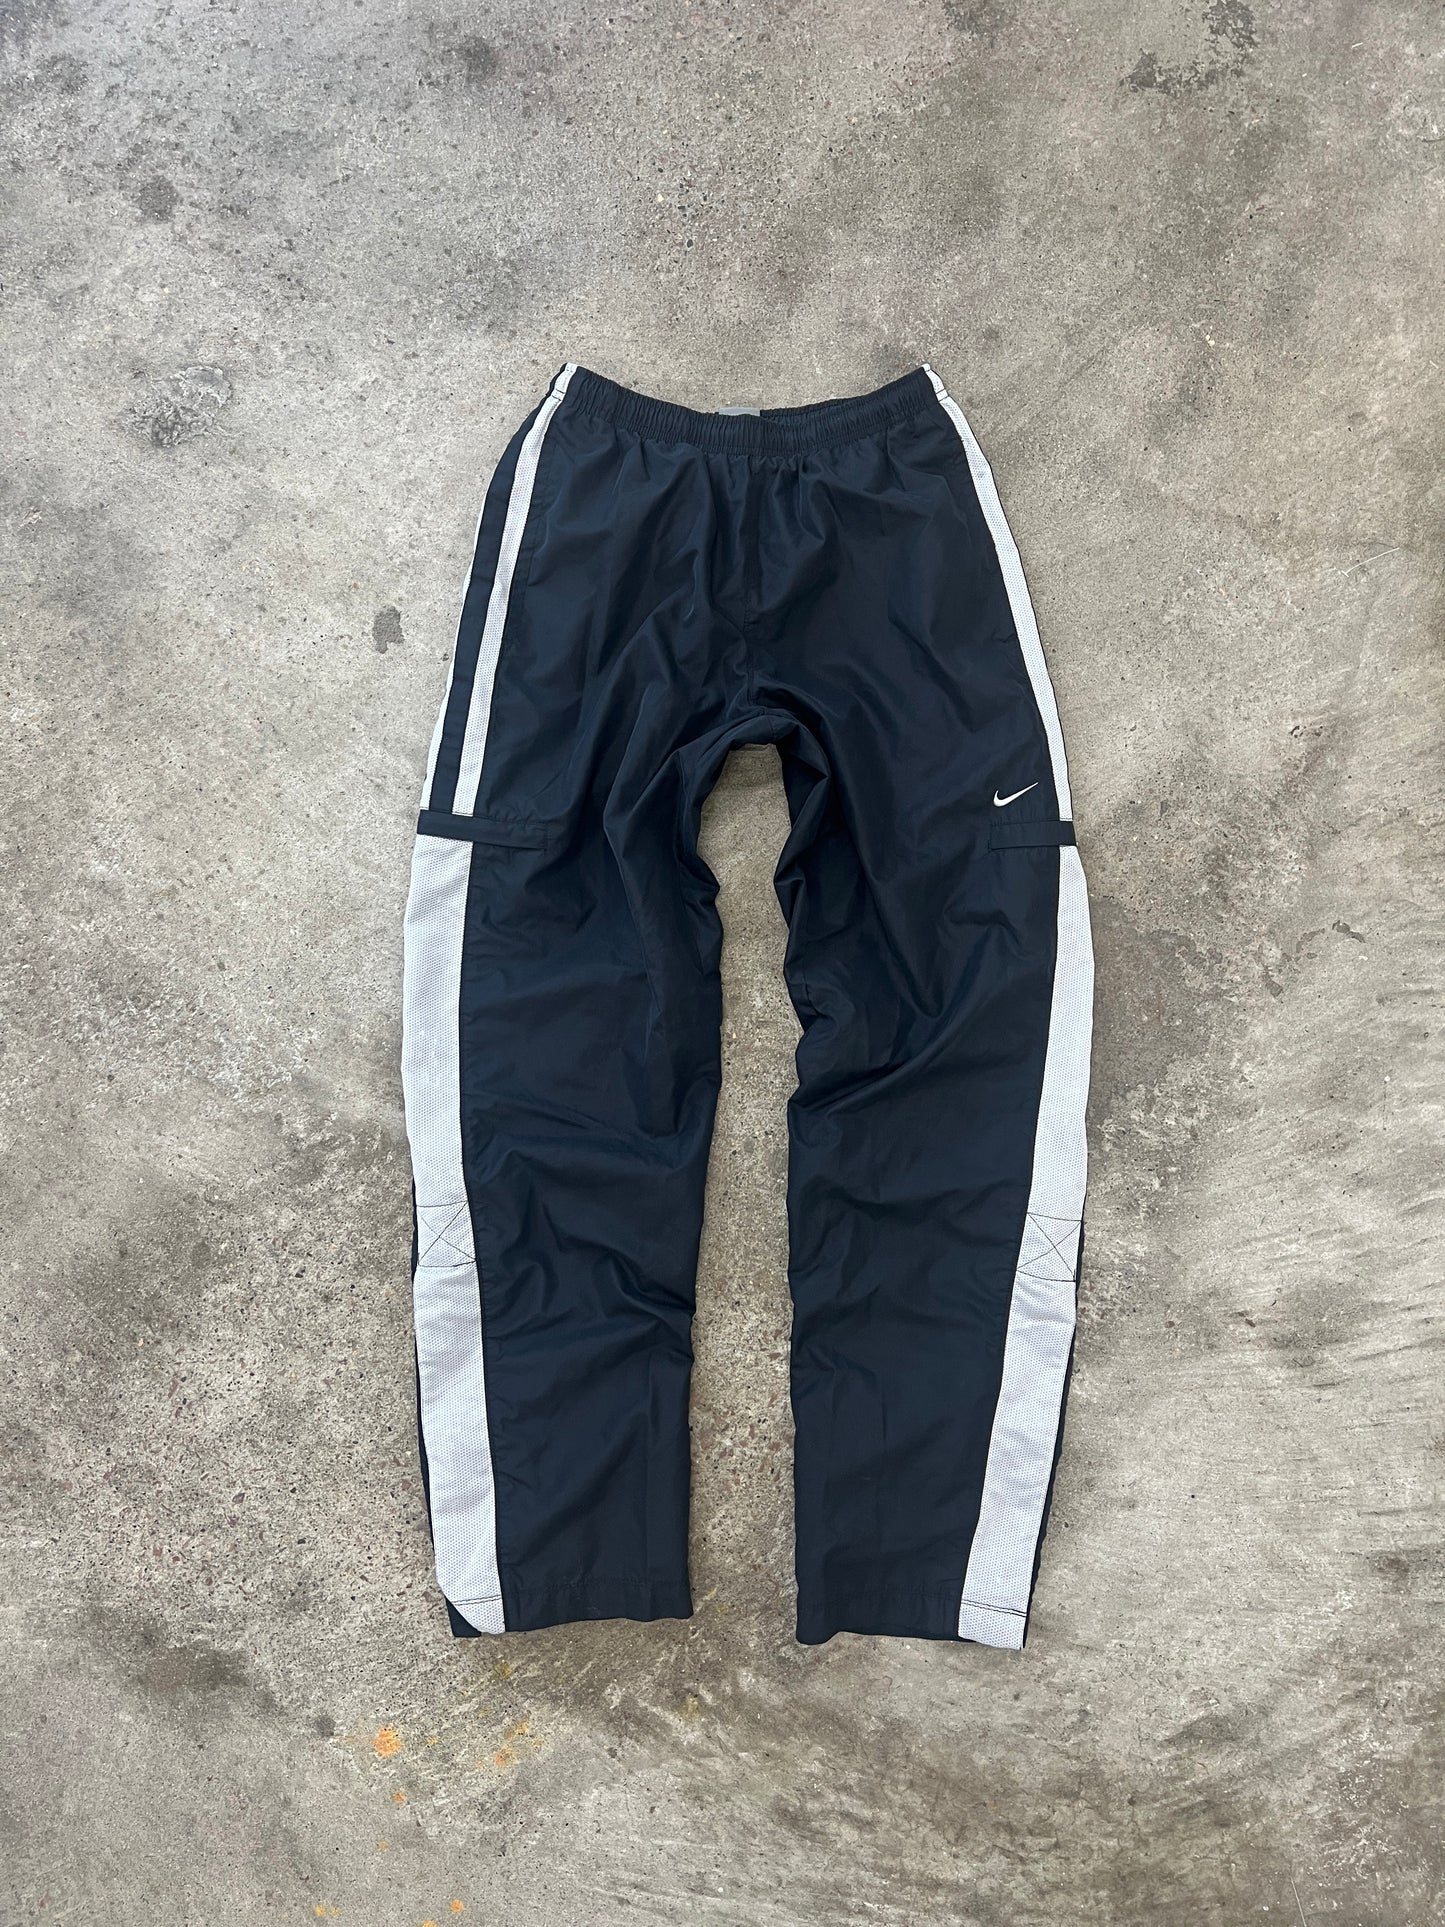 Vintage Grey Nike Track Pants - S